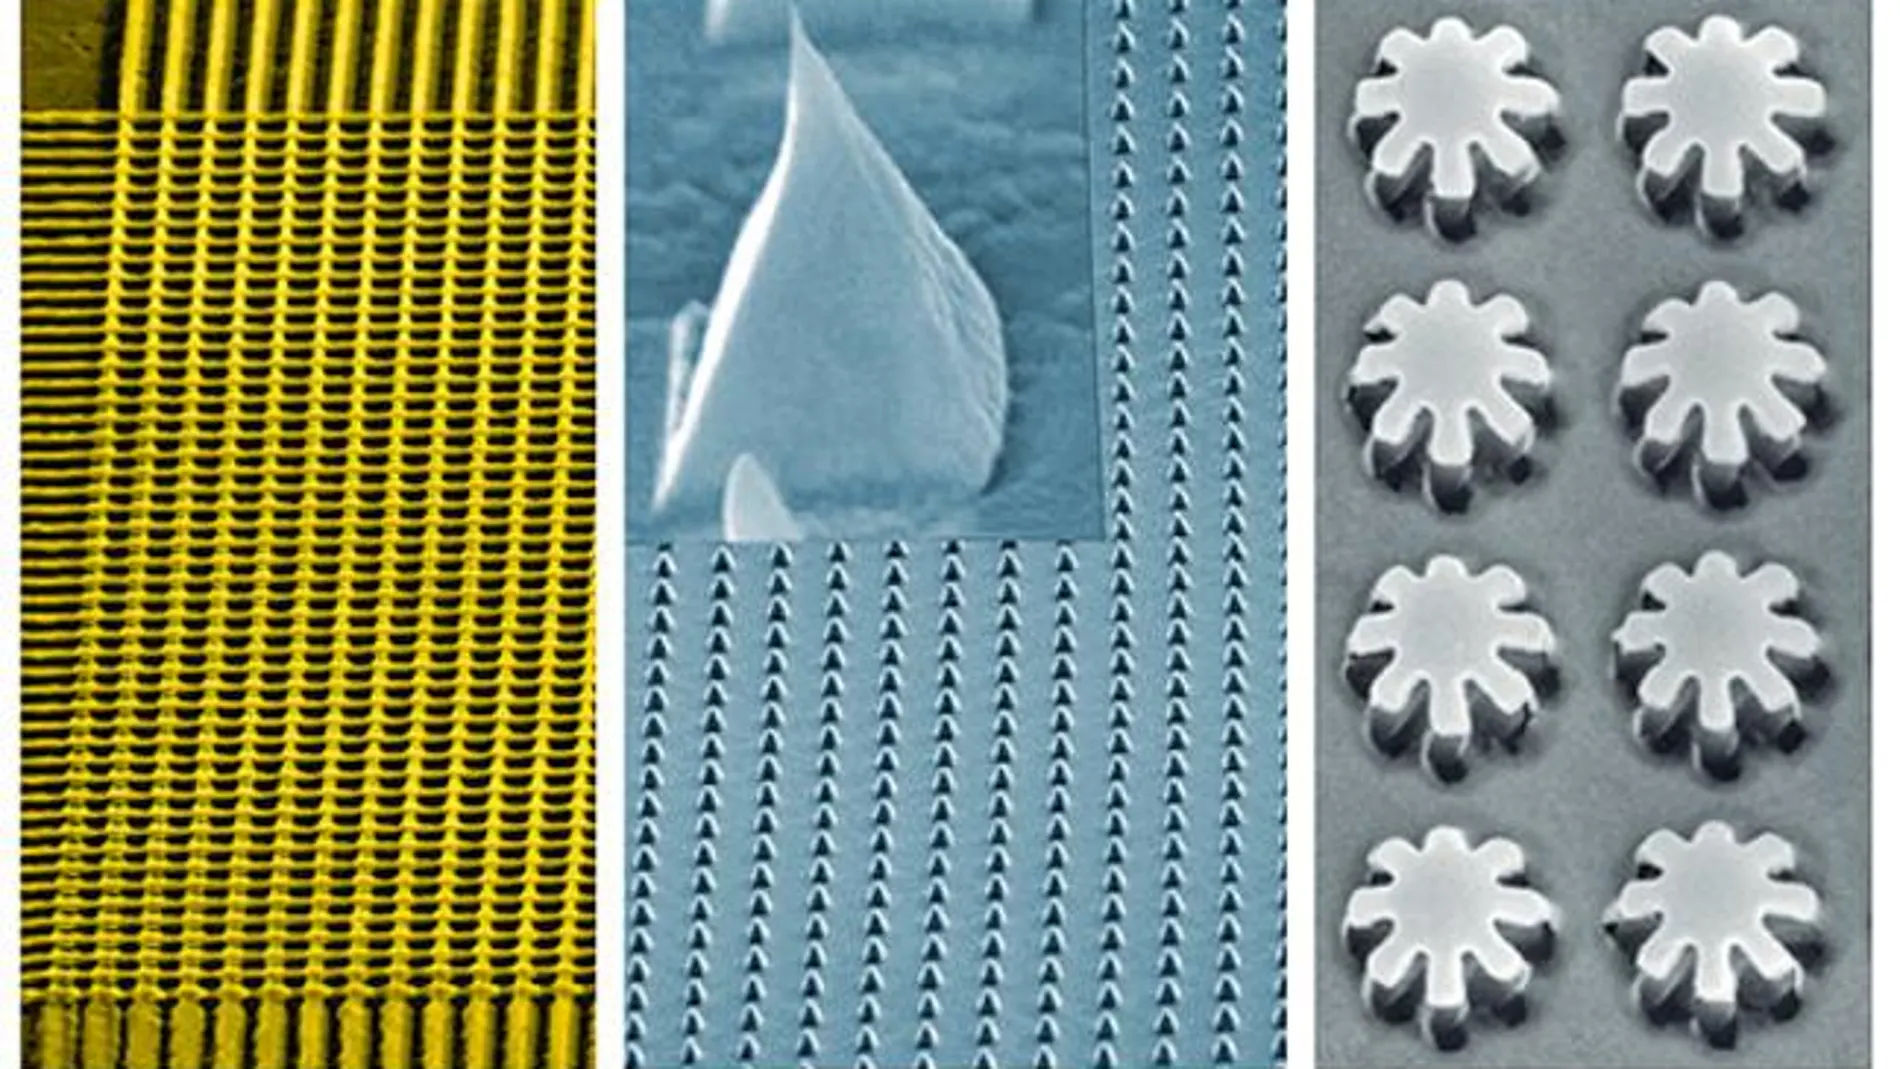 Circuito cristalino fabricado en oro, pirámides de plata de filo nanométrico y nanotuercas cristalinas de aluminio fabricadas con la nueva técnica